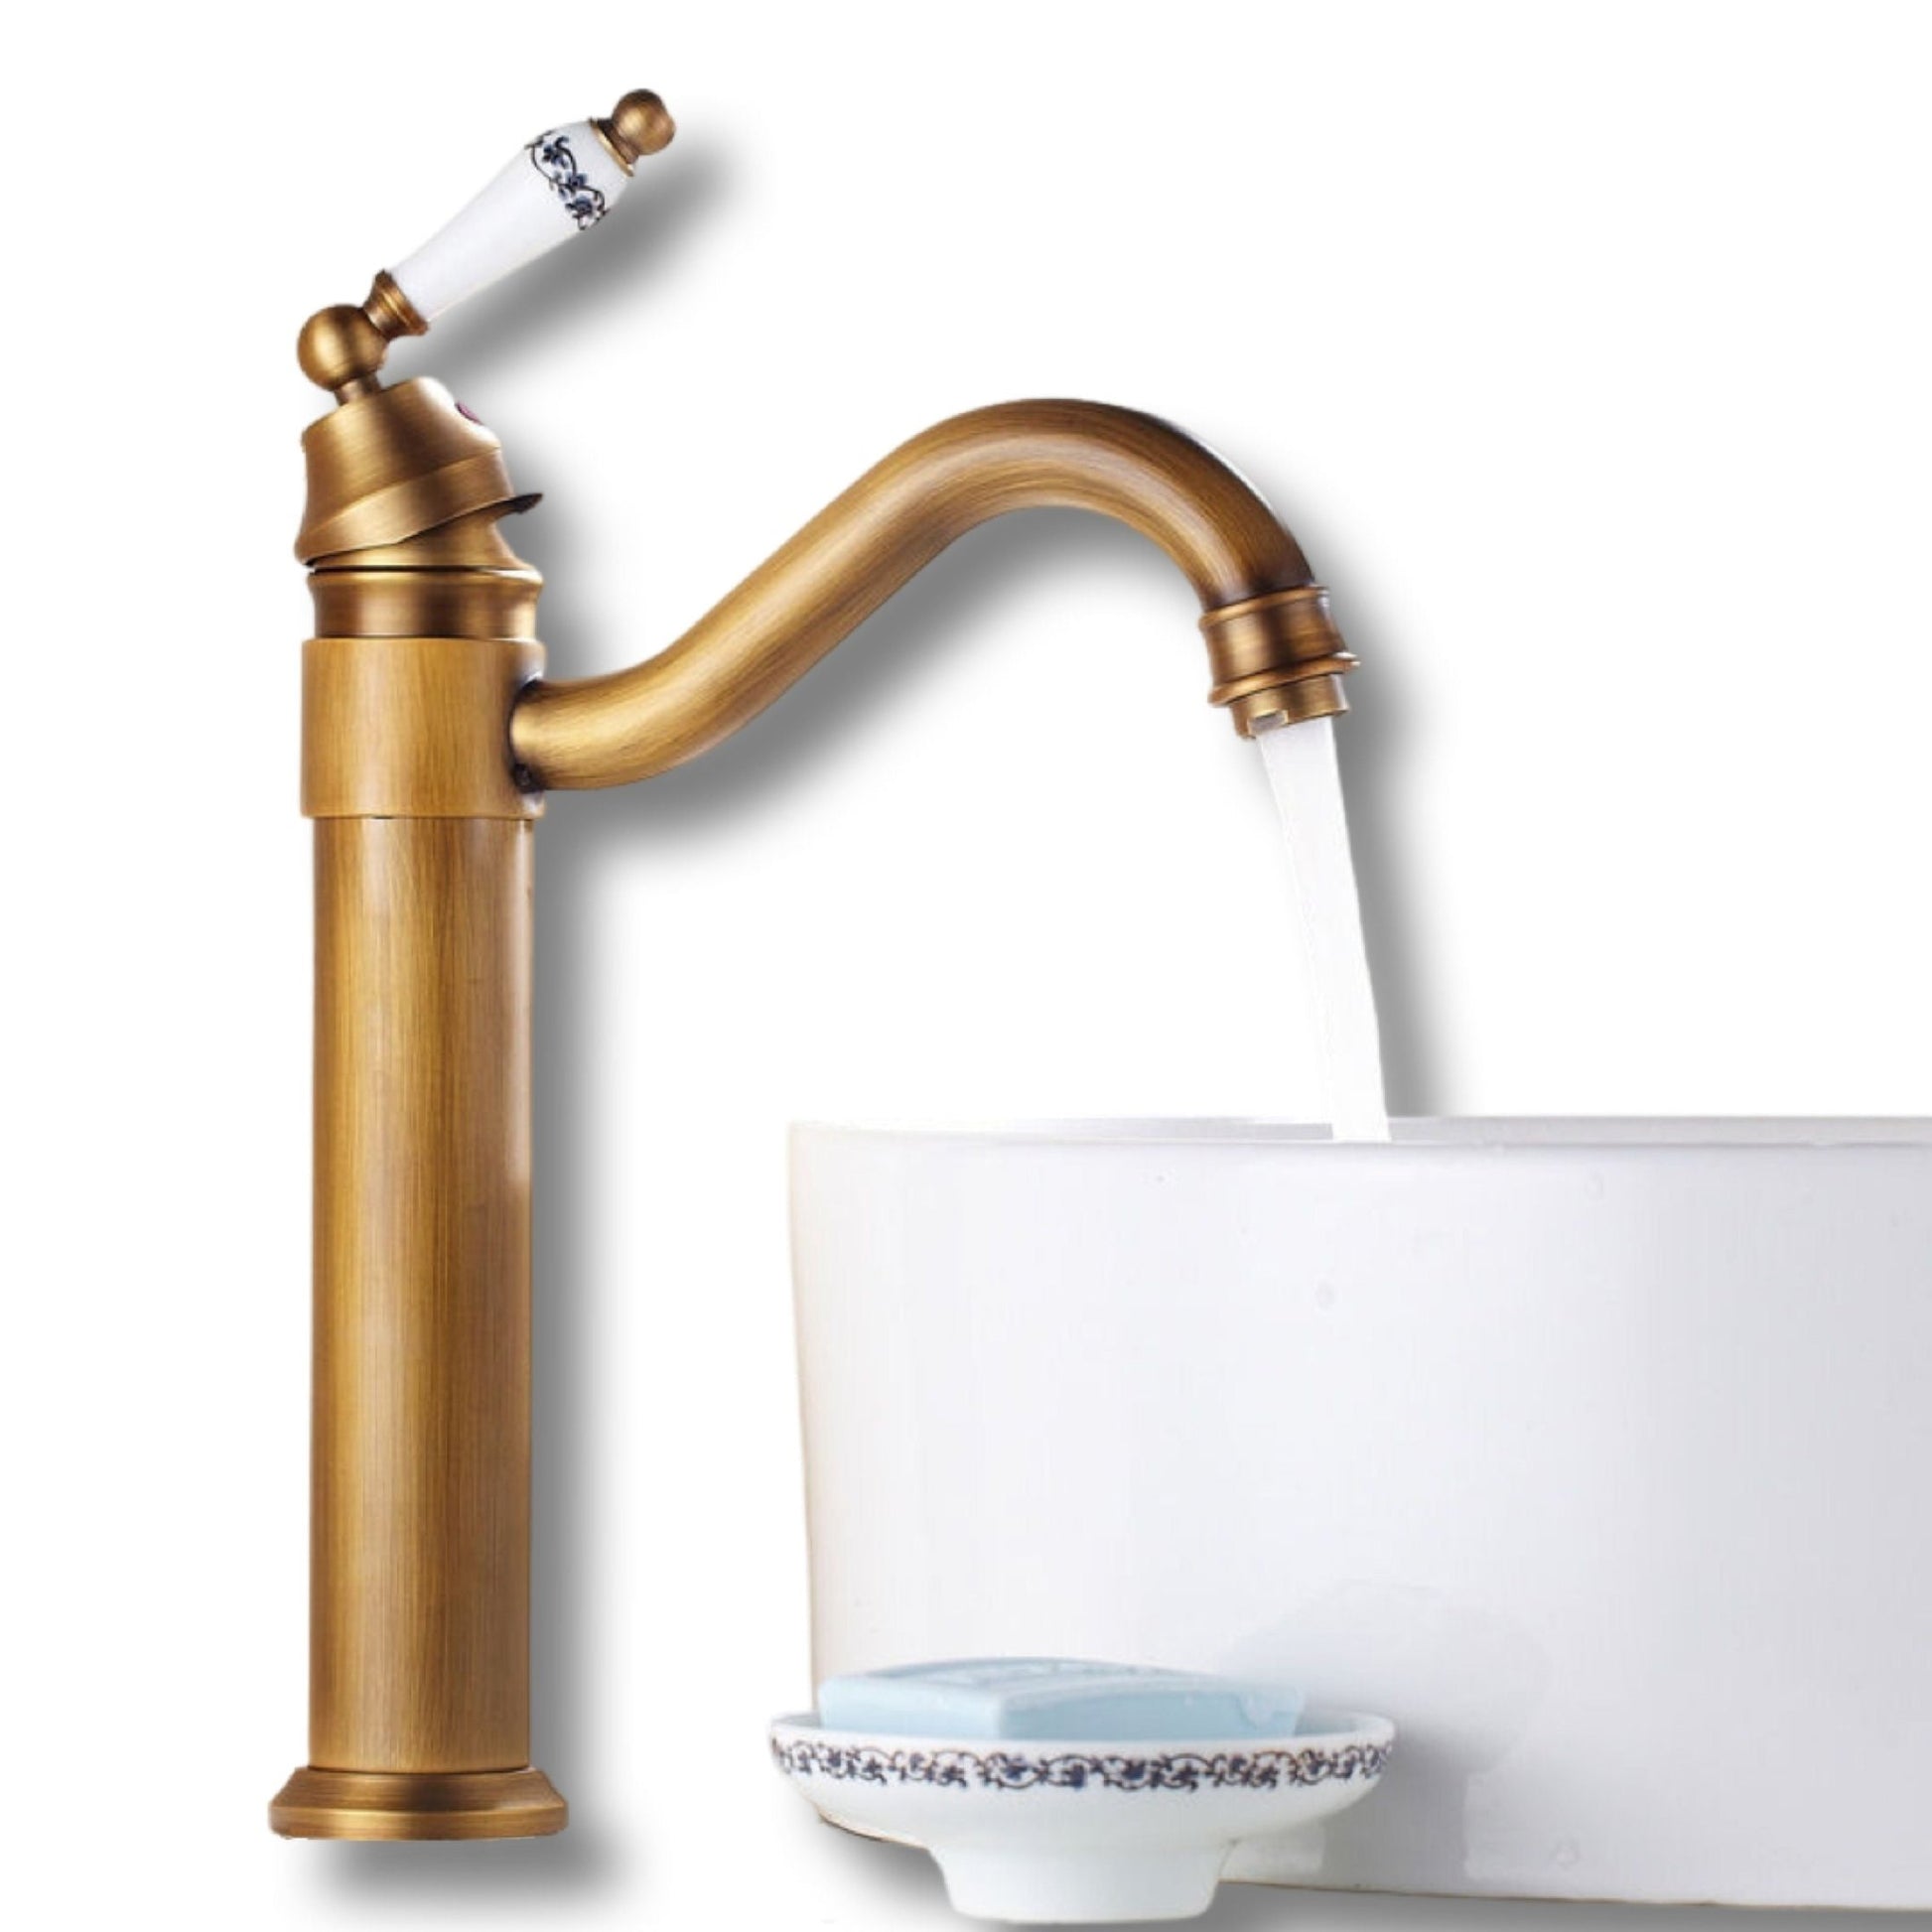 Retro Antique Brass Ceramic Vessel Sink Faucet Lavande - |VESIMI Design| Luxury and Rustic bathrooms online